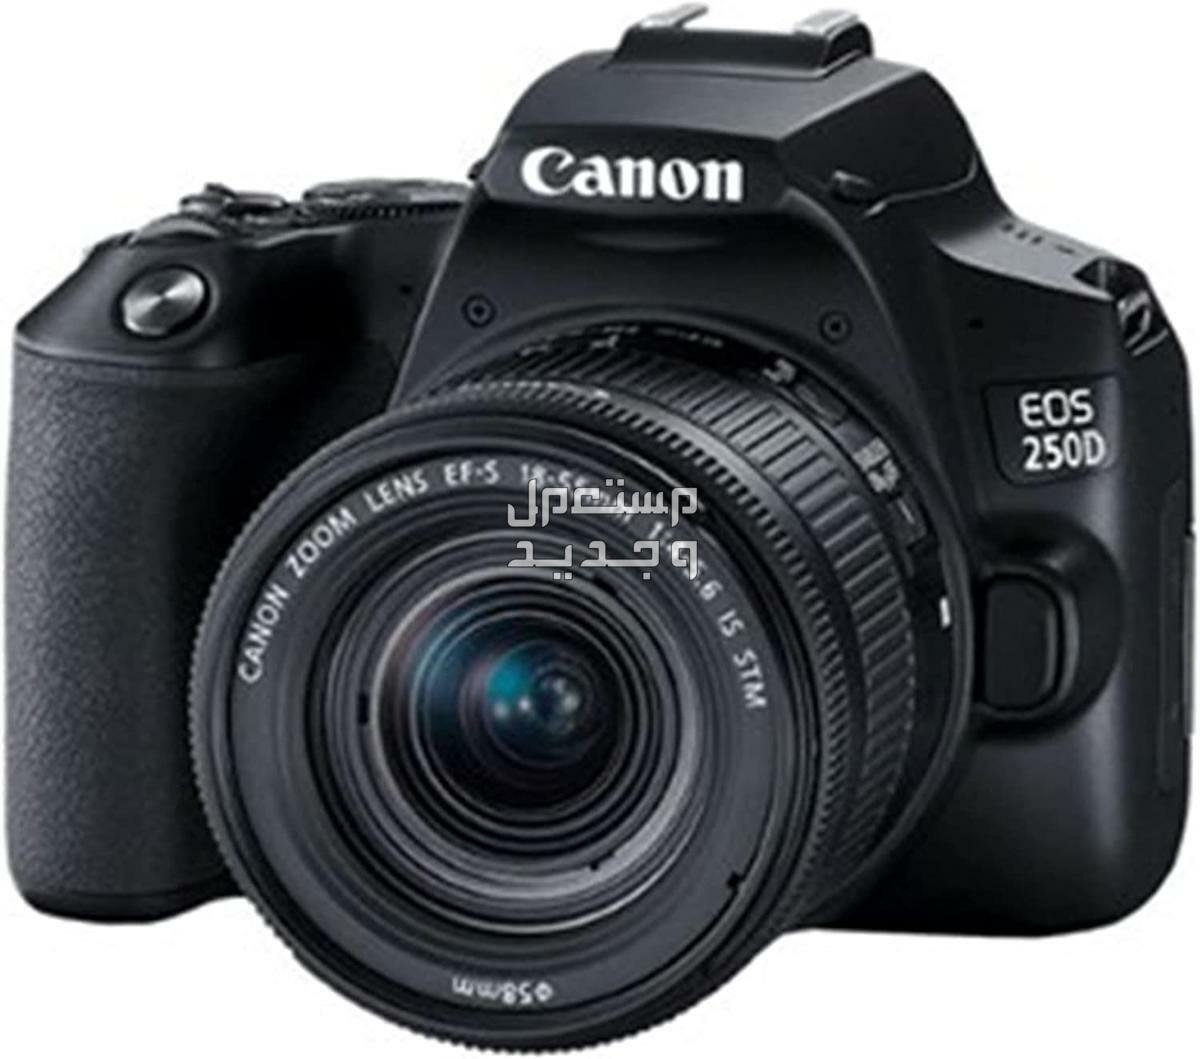 سعر ومميزات ومواصفات أرخص 5 كاميرات تصوير من كانون في سوريا كاميرا Canon EOS 250D